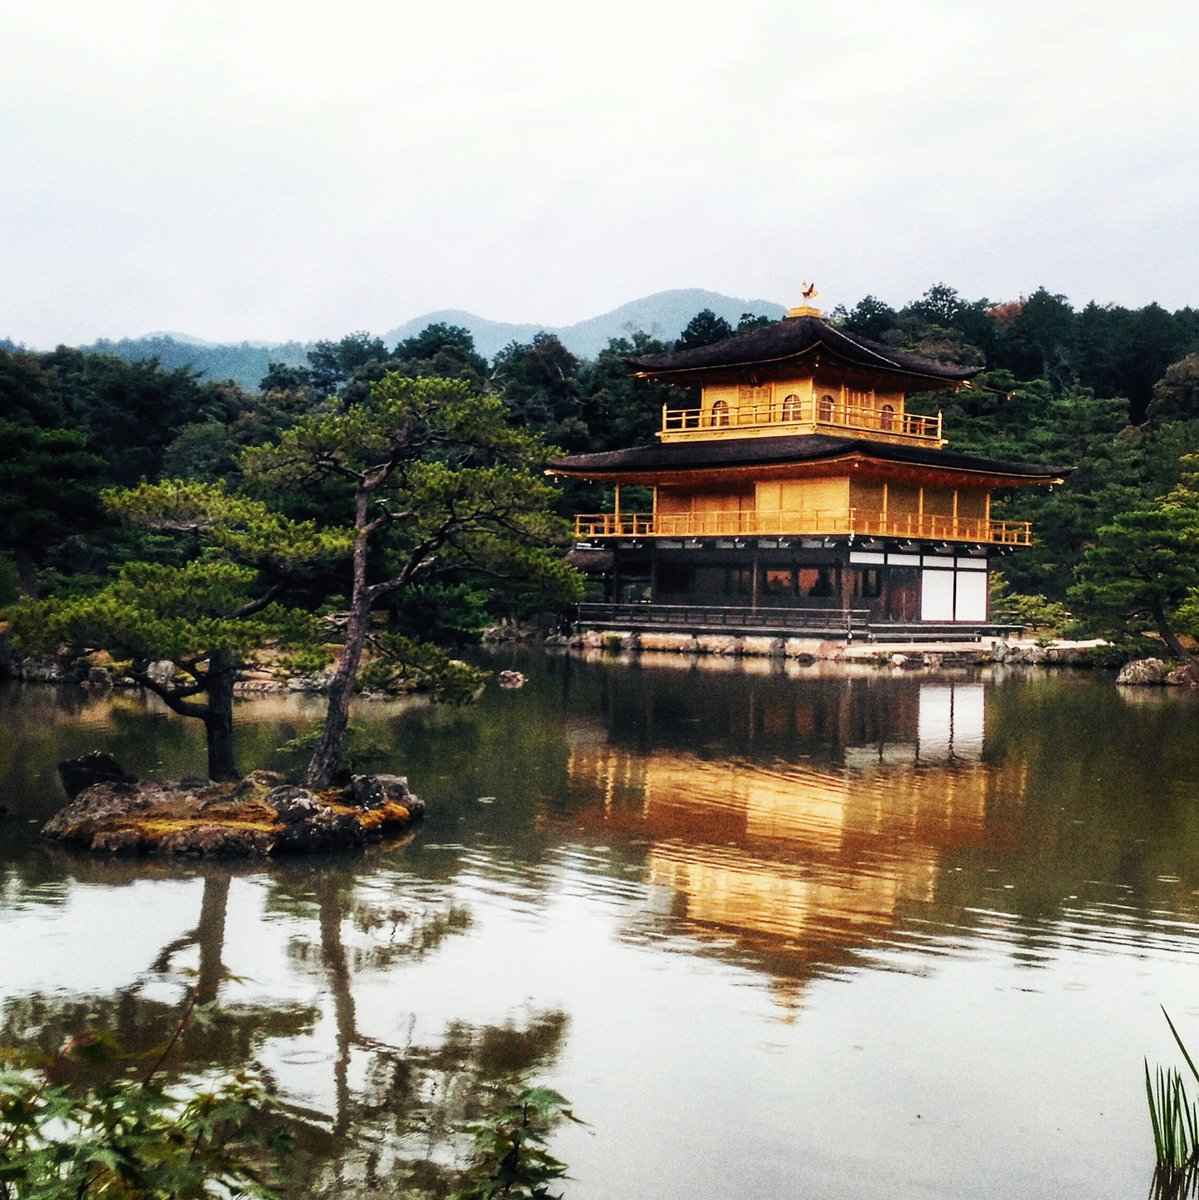 Para mi Japón es tradición, belleza y serenidad. #templodorado #turismo_japón